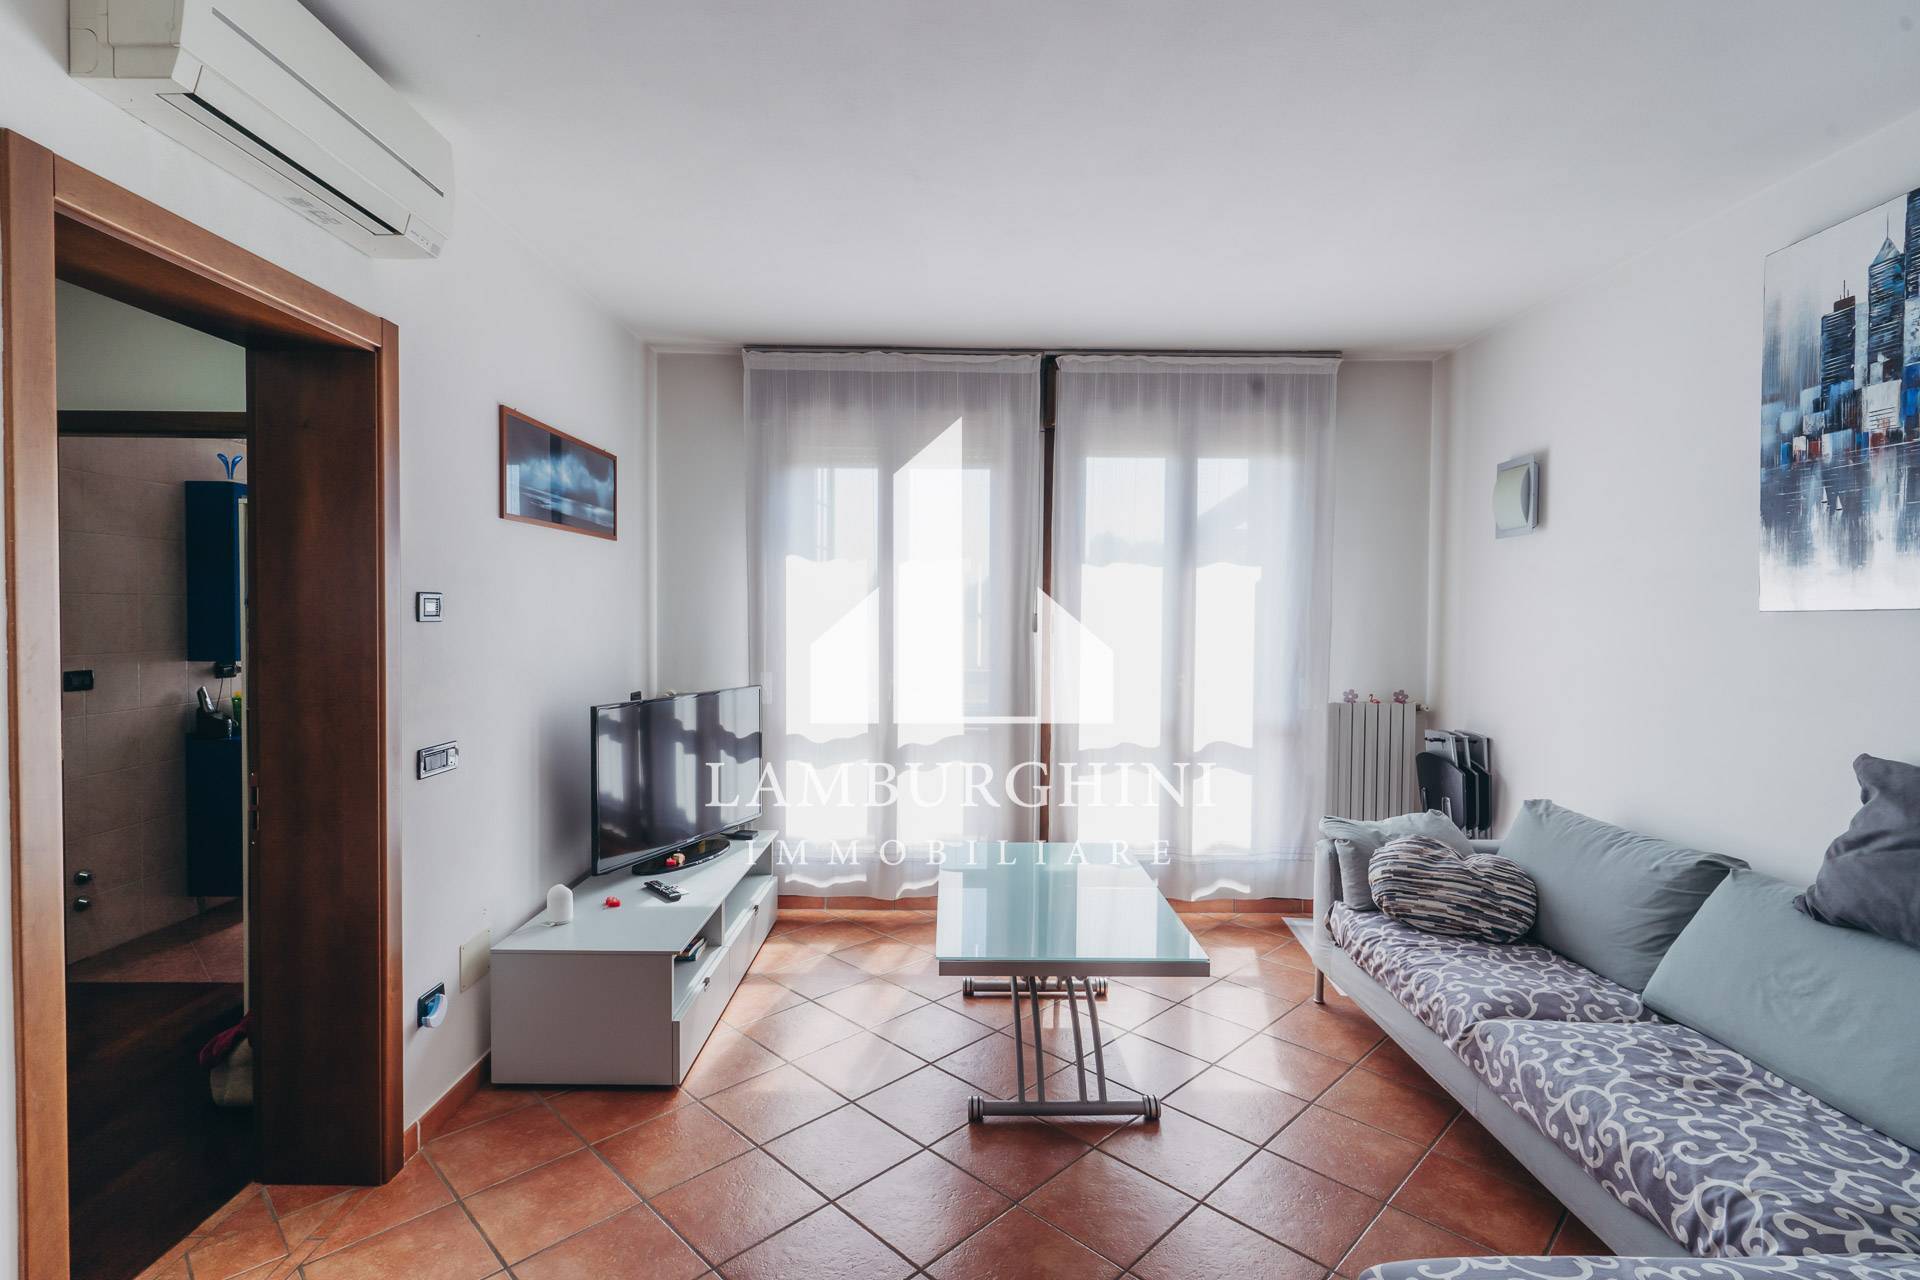 Appartamento con terrazzo, Ferrara borgo punta